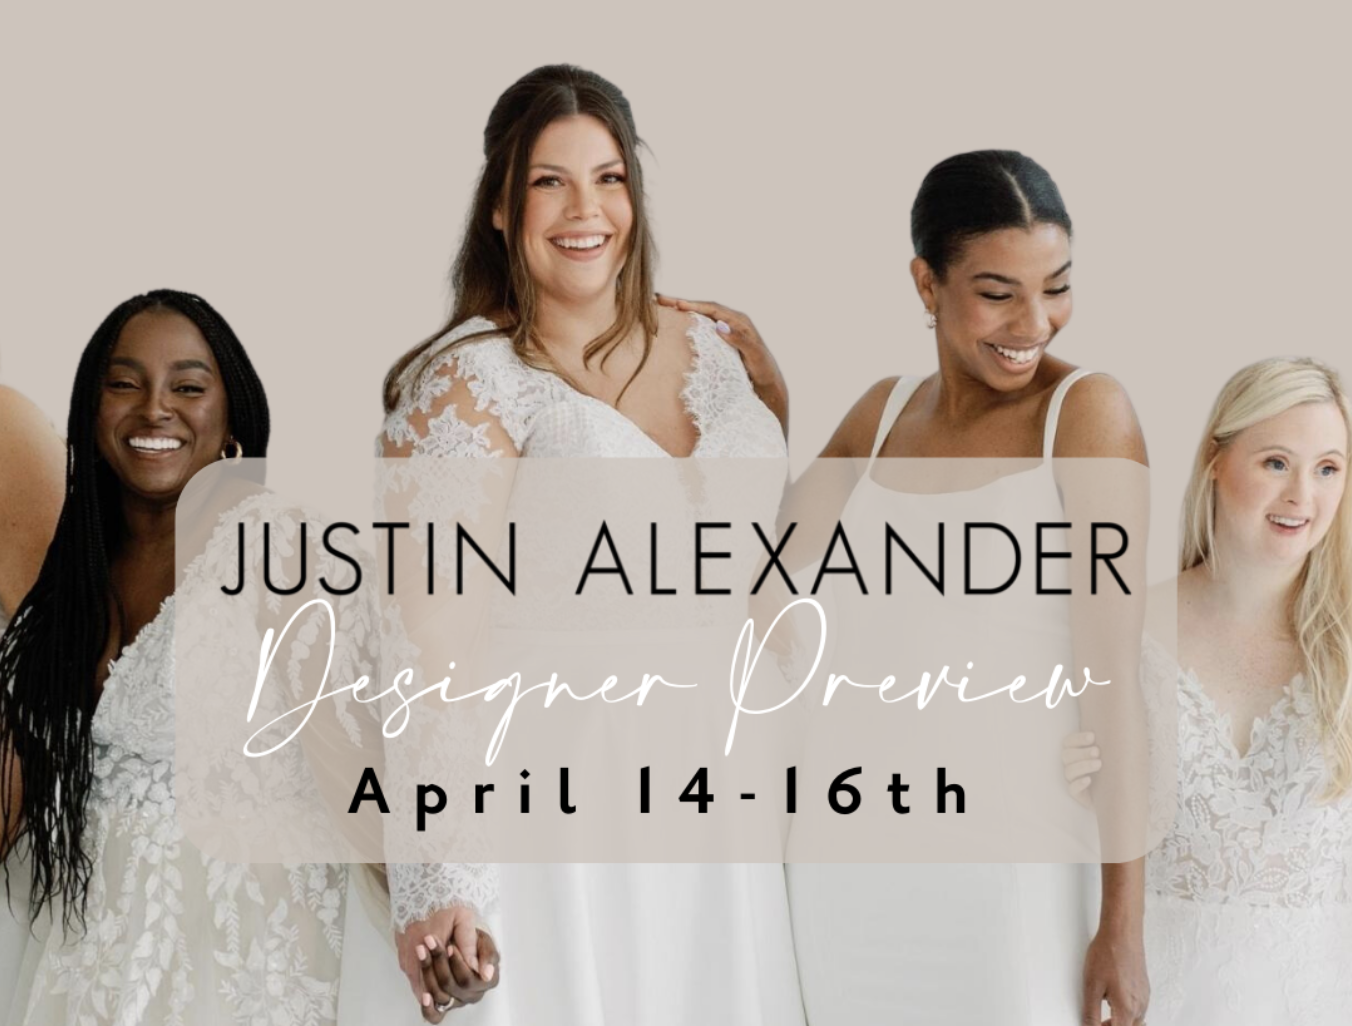 Justin Alexander Designer Preview